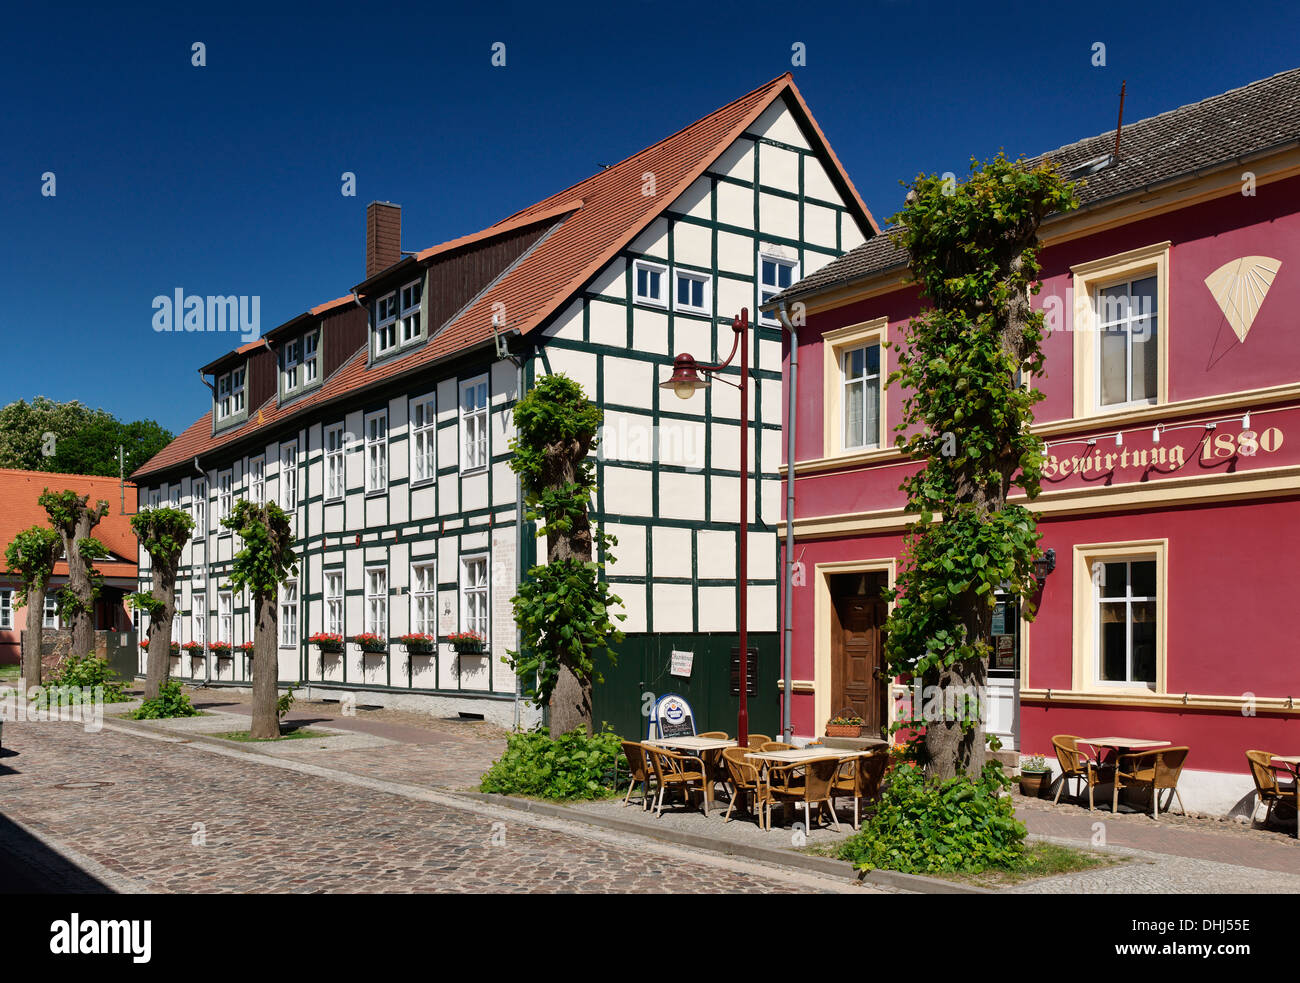 Ansicht der alten Schule von Joachimsthal, Schorfheide, Uckermark, Land Brandenburg, Deutschland, Europa Stockfoto